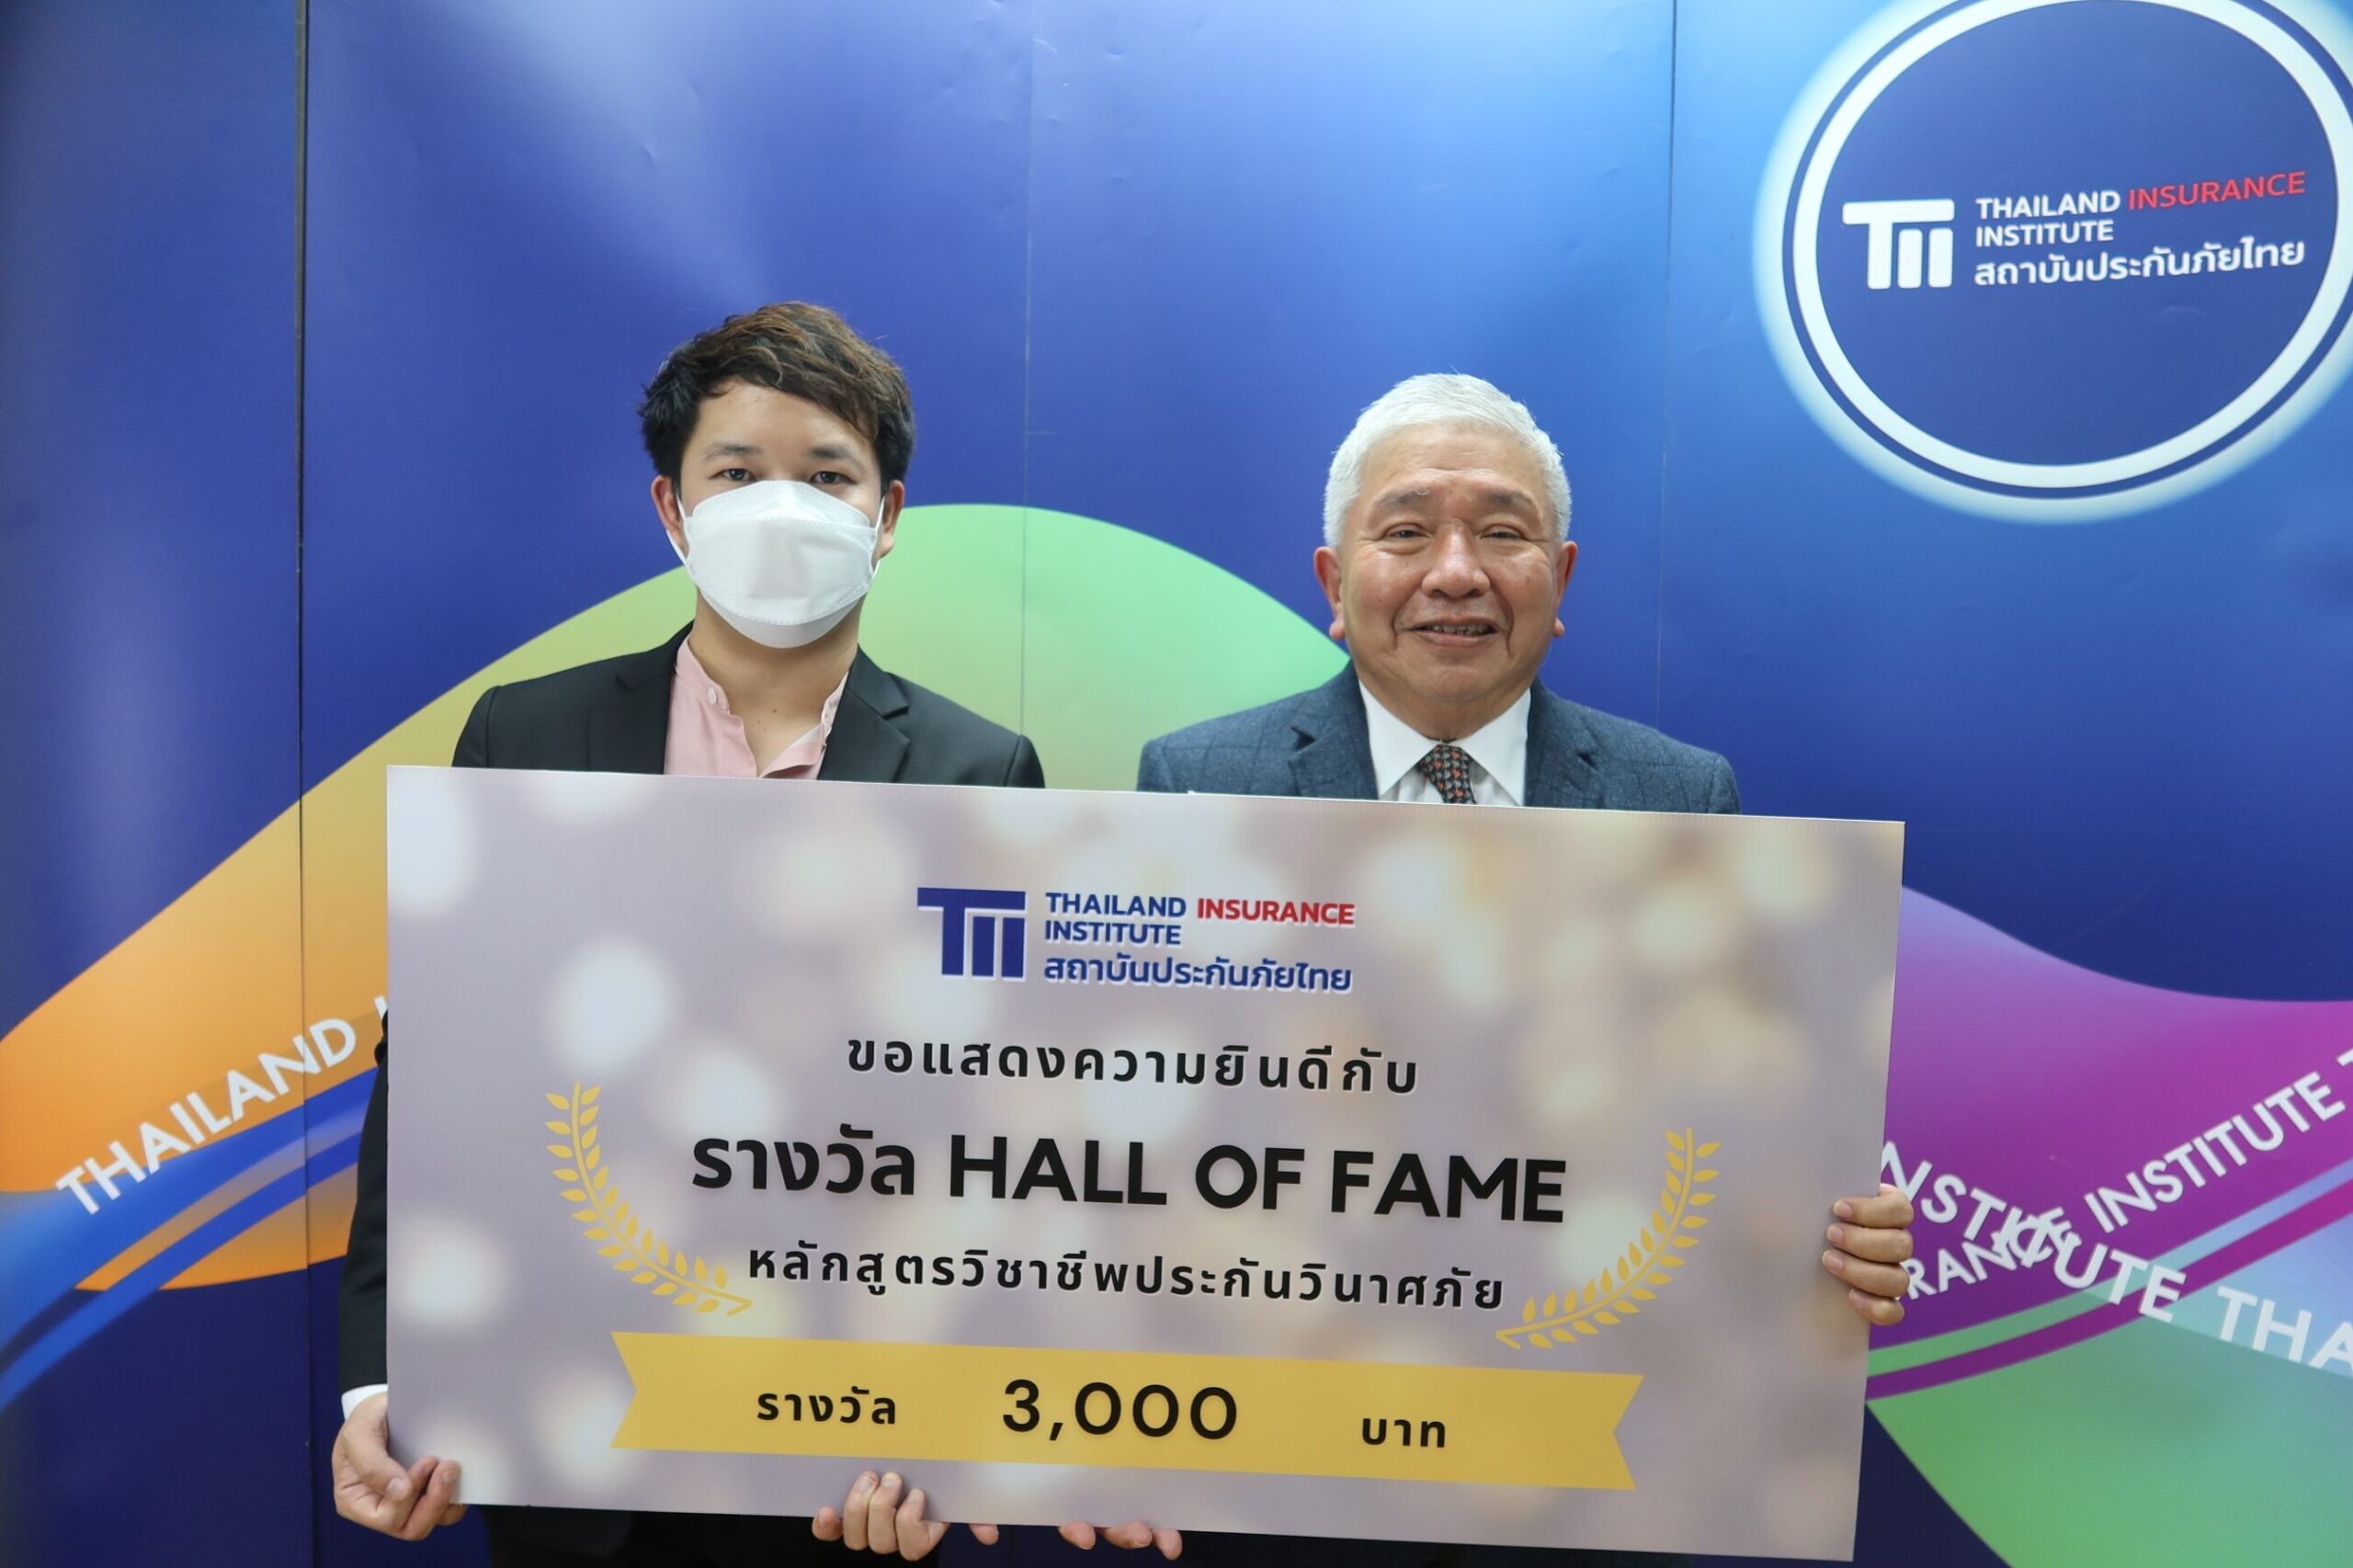 คุณทัตเทพ สุจิตจร ผู้อำนวยการสถาบันประกันภัยไทย มอบรางวัล Hall of Fame ให้แก่ผู้ที่มีผลการเรียนได้เกรด A 5 วิชา หลักสูตรวิชาชีพประกันวินาศภัย ประจำปี 2565 3